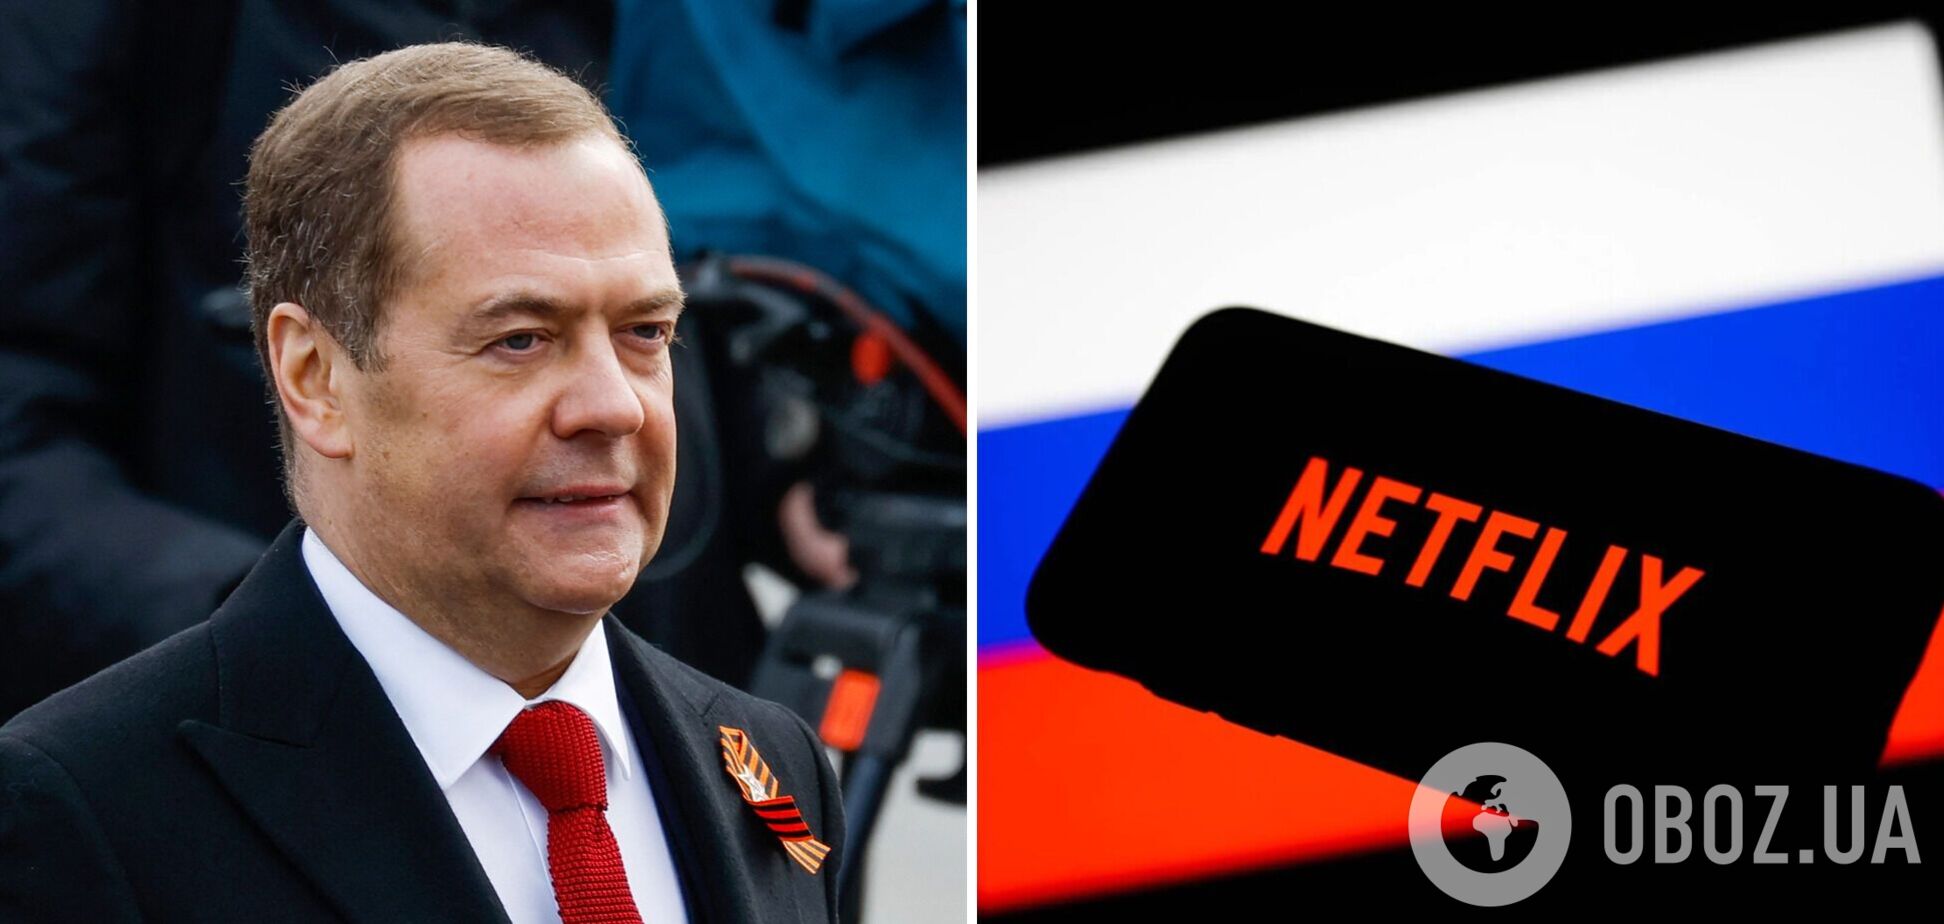 'Будем пользоваться бесплатно': Медведев официально призвал распространять в сети пиратские копии. Видео